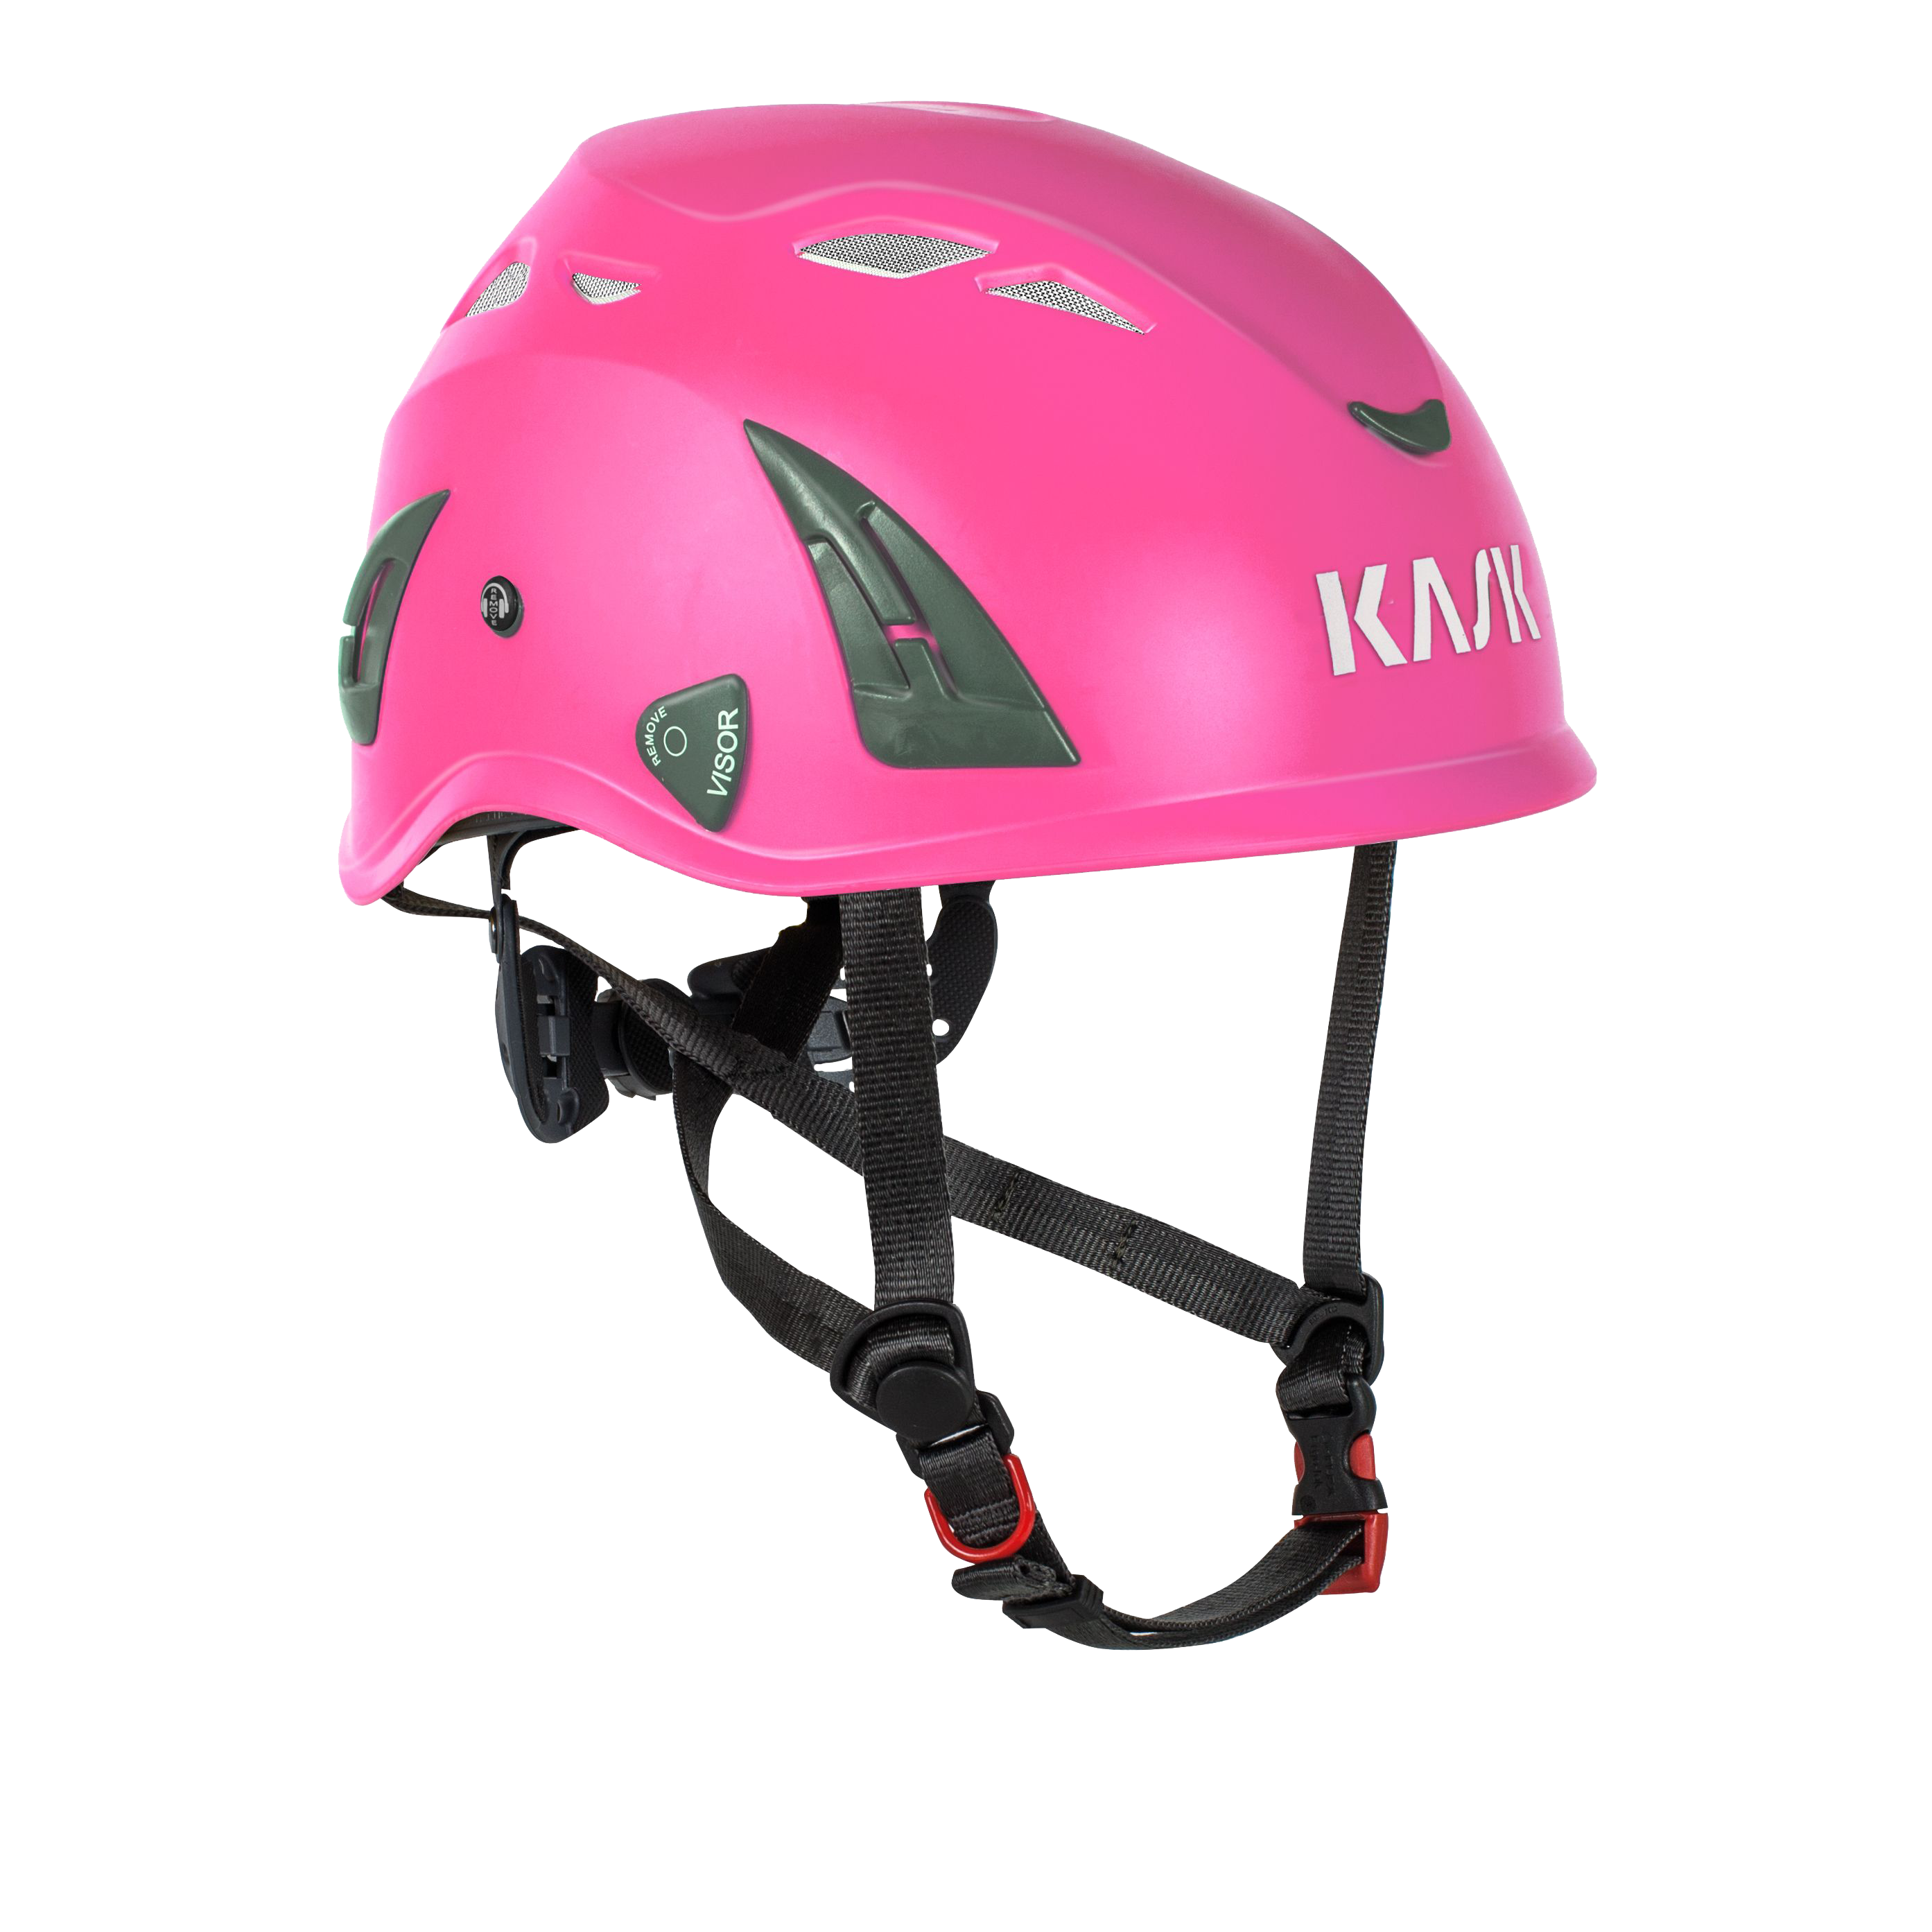 dik Maak los Larry Belmont Kask SuperPlasma Helmet Pink - Honey Brothers